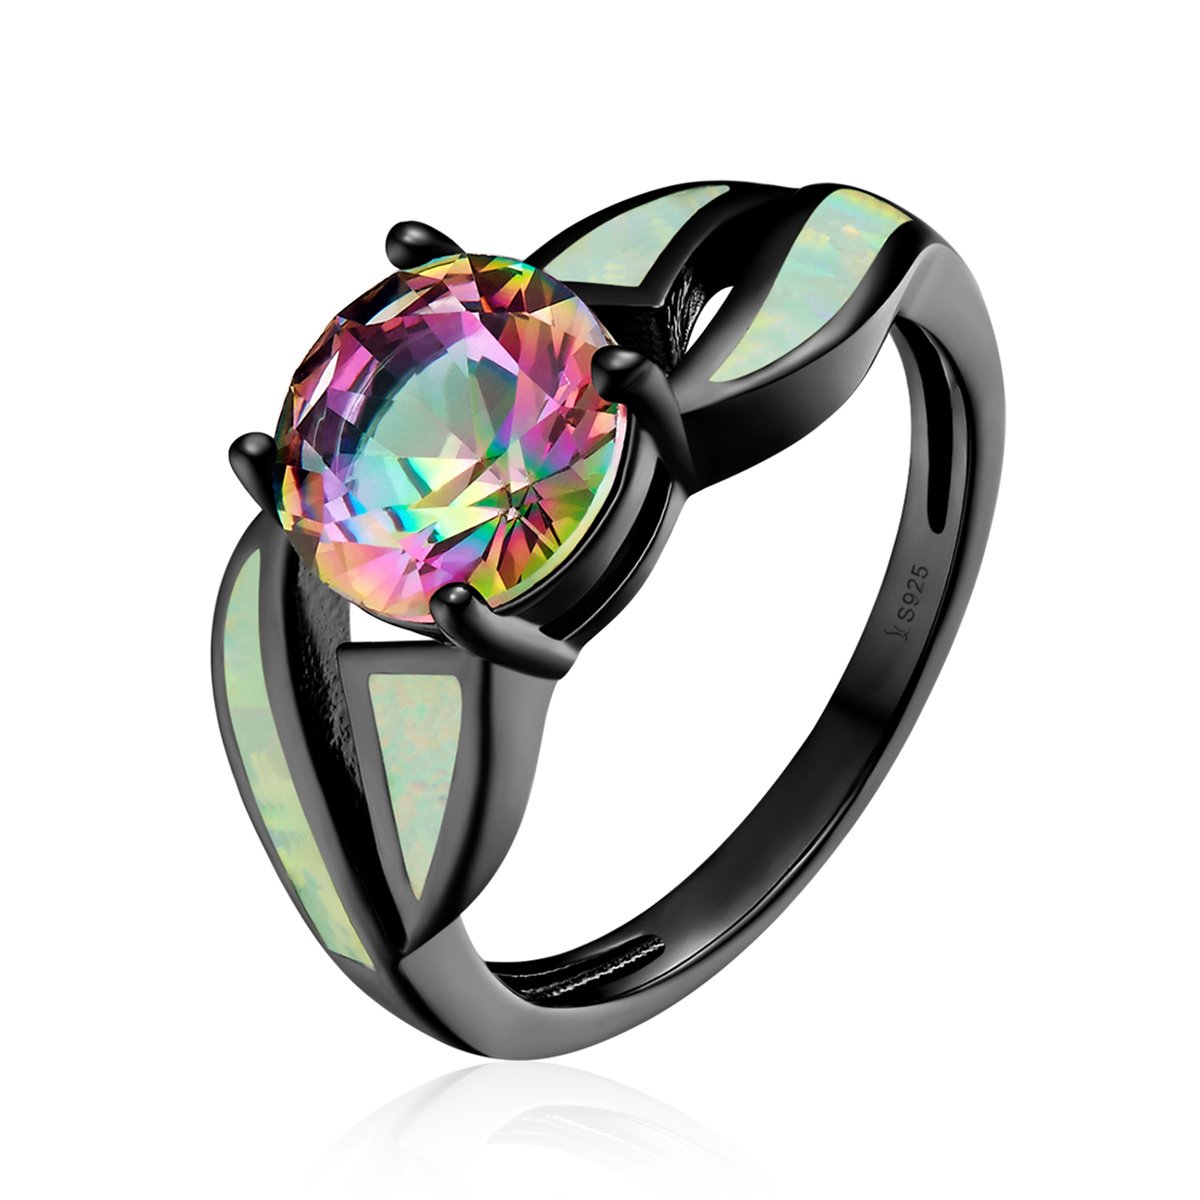 E-shop Linda's Jewelry Strieborný prsteň Wonder čierny s opál Ag 925/1000 IPR063-58